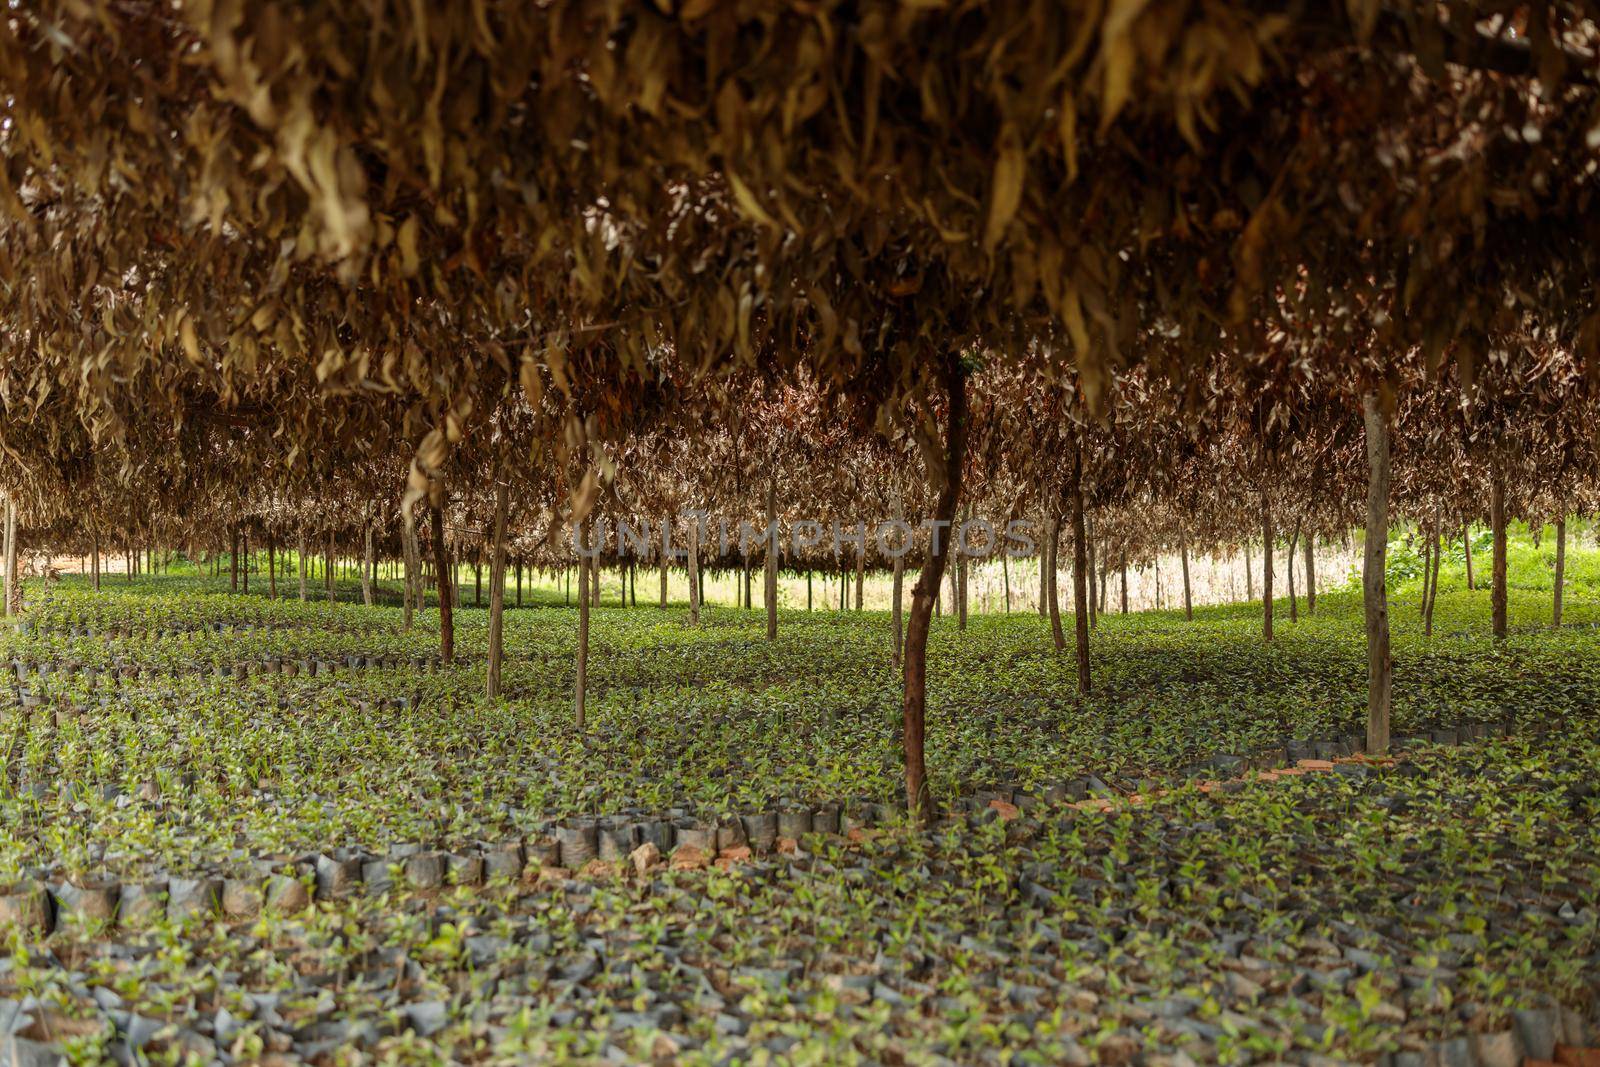 Arabica coffee trees in coffee nursery plantation in Rwanda region by Yaroslav_astakhov